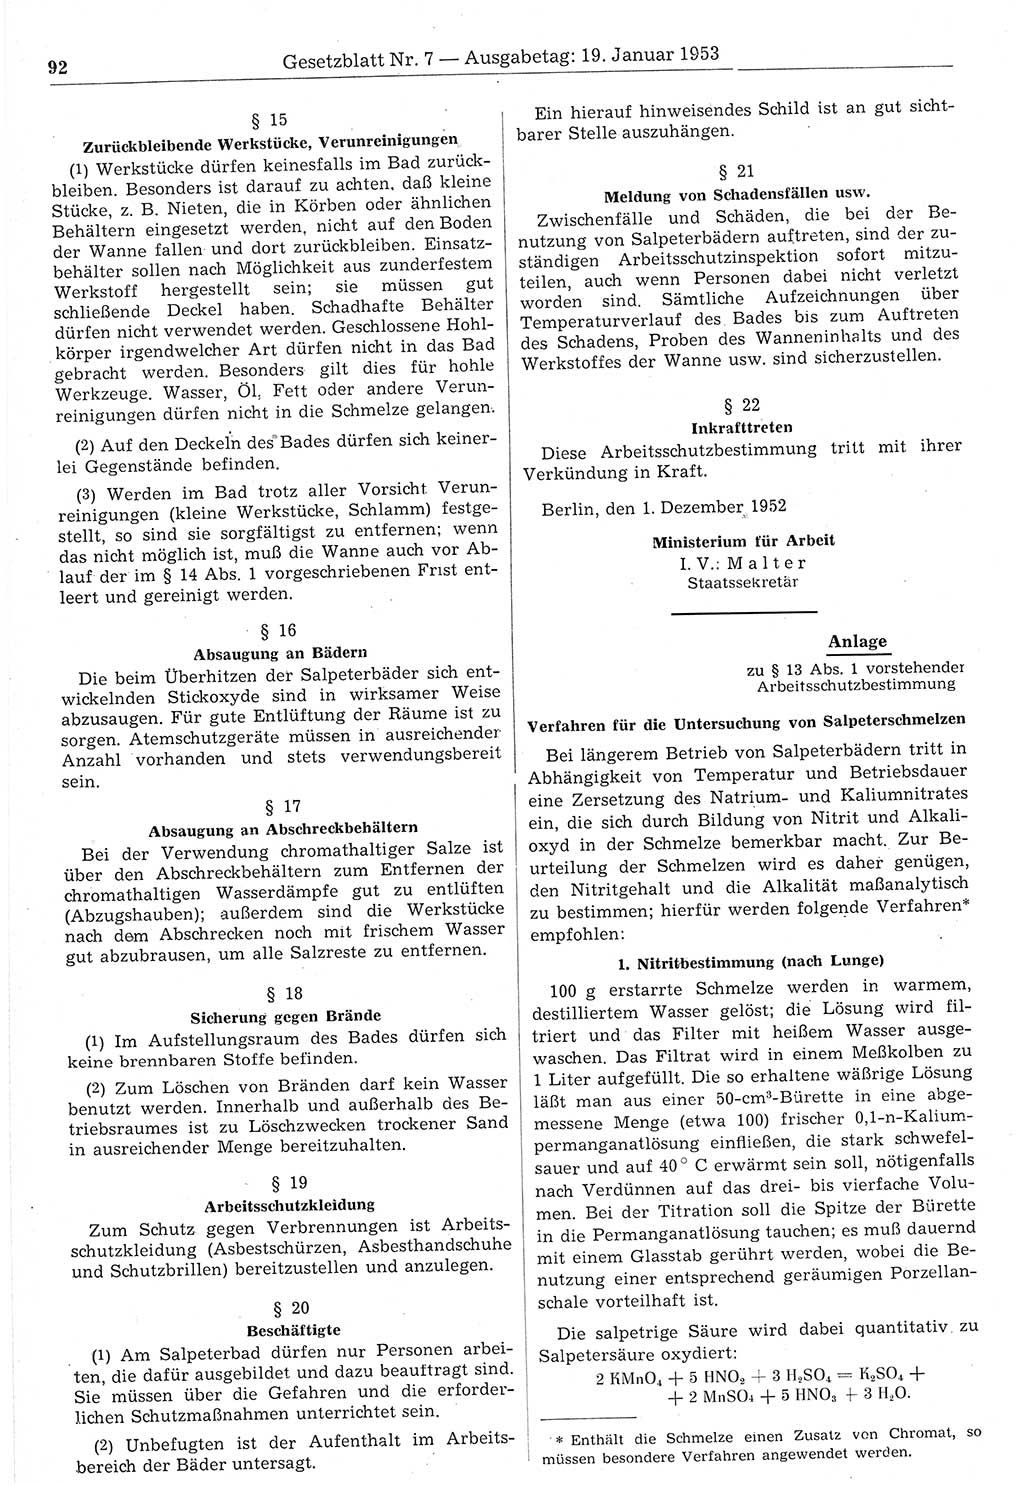 Gesetzblatt (GBl.) der Deutschen Demokratischen Republik (DDR) 1953, Seite 92 (GBl. DDR 1953, S. 92)